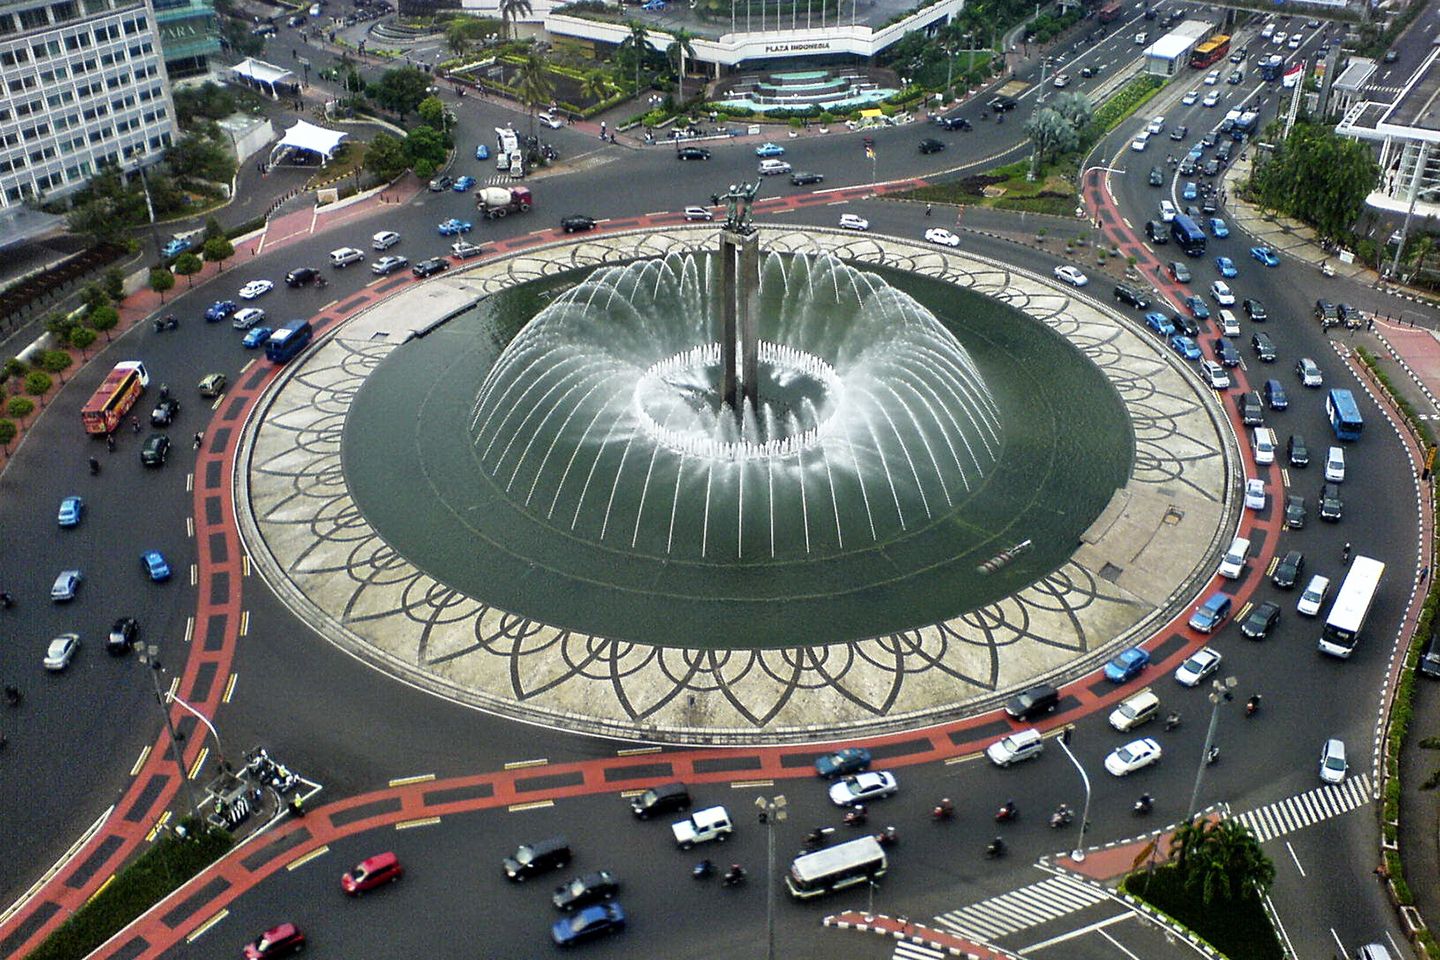 Jakarta city center